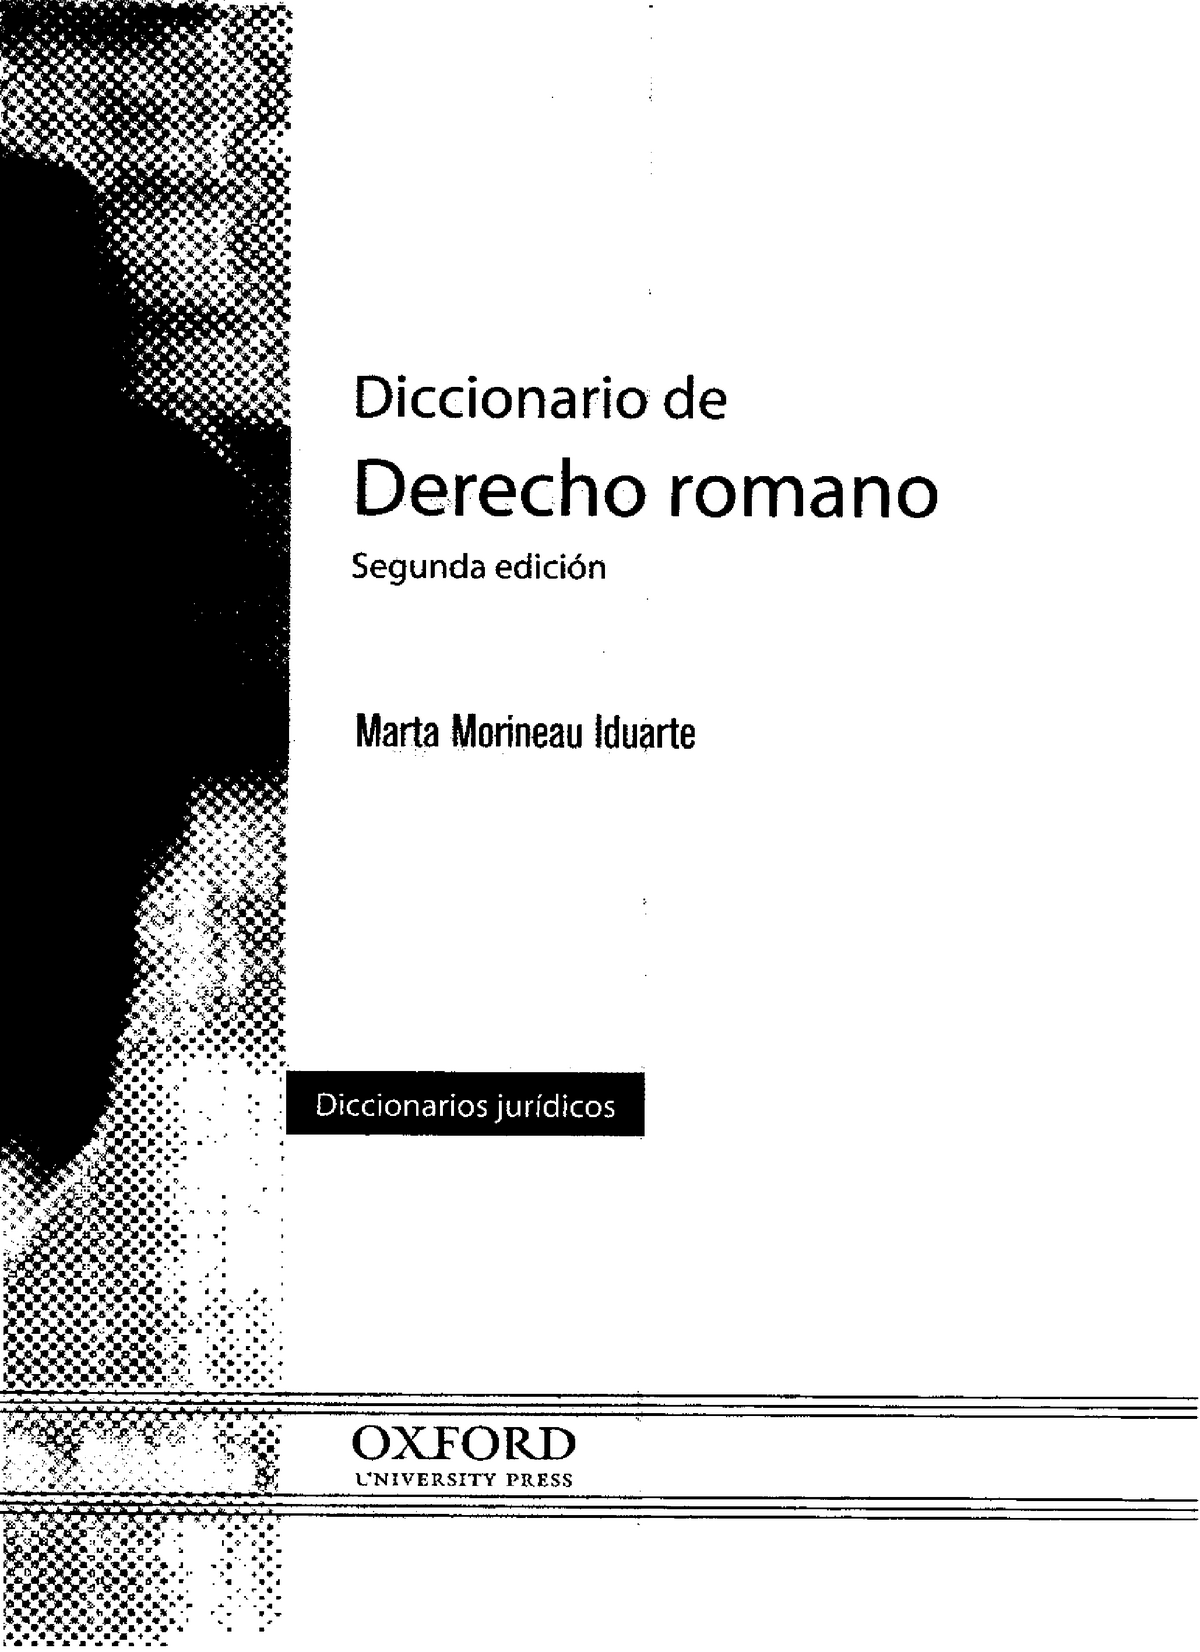 Diccionario De Derecho Romano Marta Morineau Iduarte Diccionario De Derecho Romano 0281